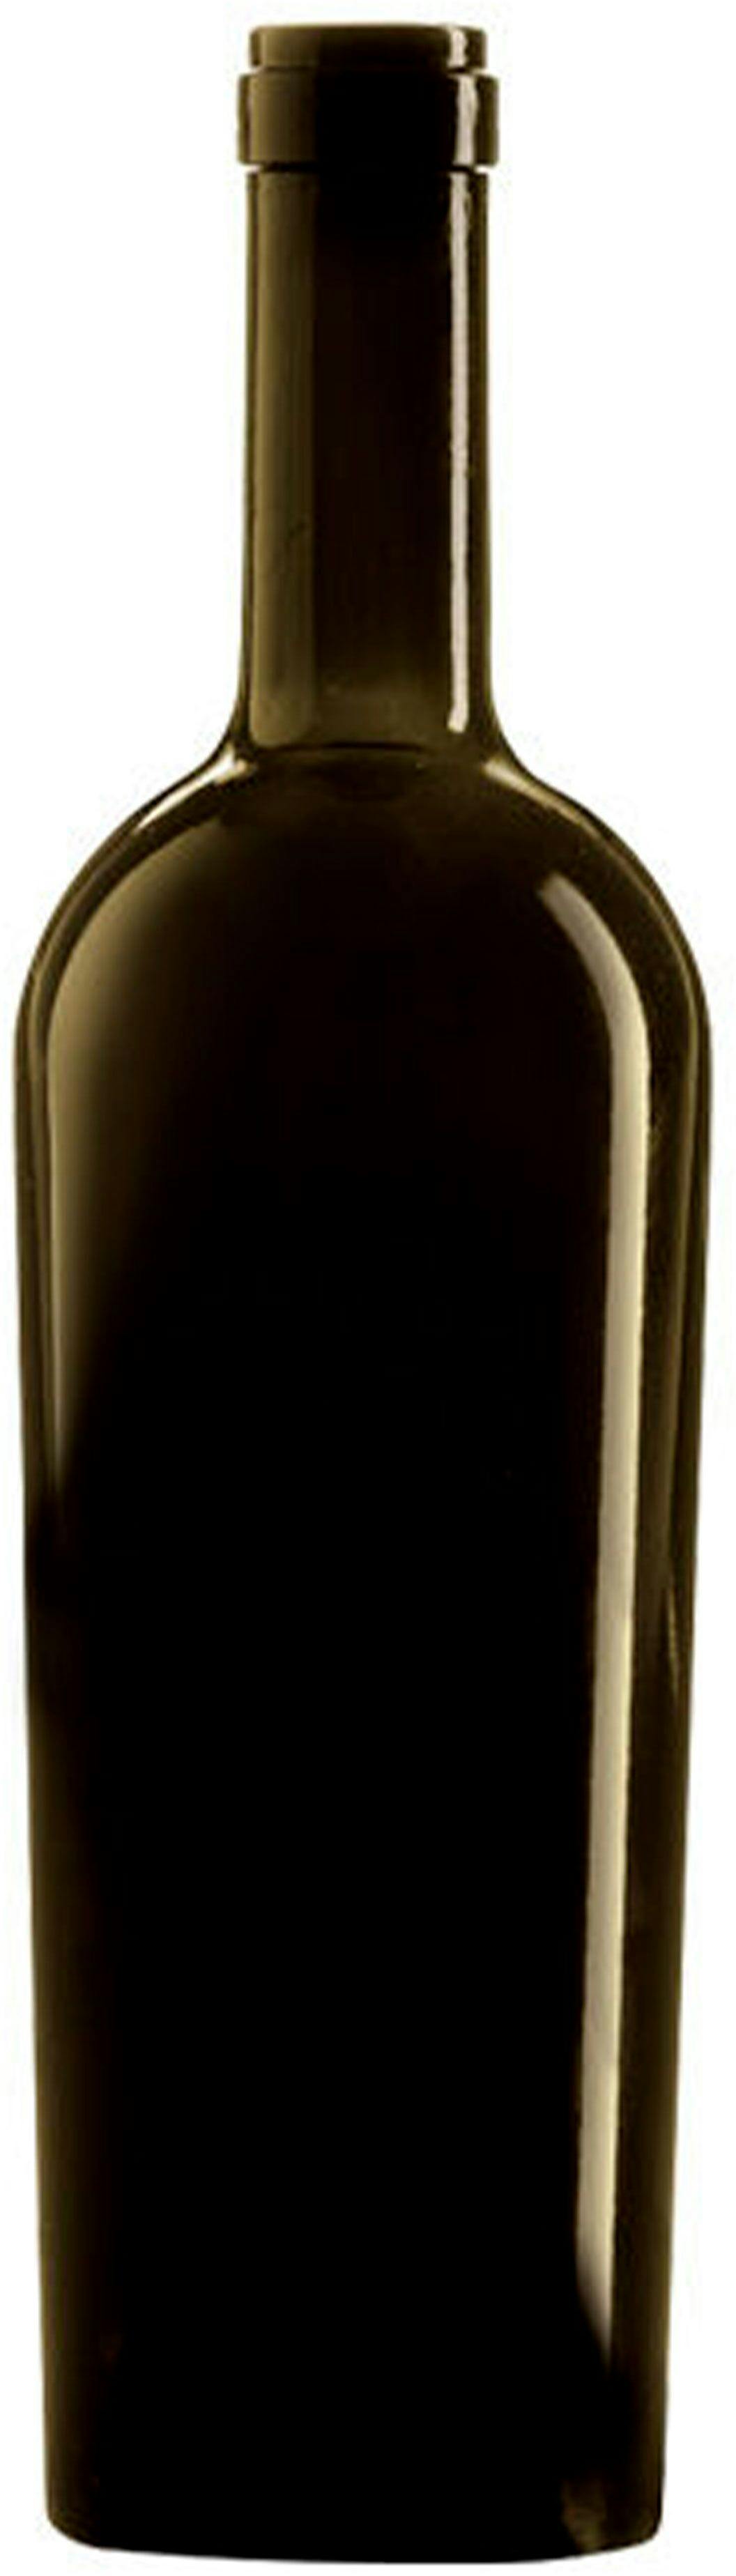 Flaschen BORD JUMBO 750 HEAVY S VA